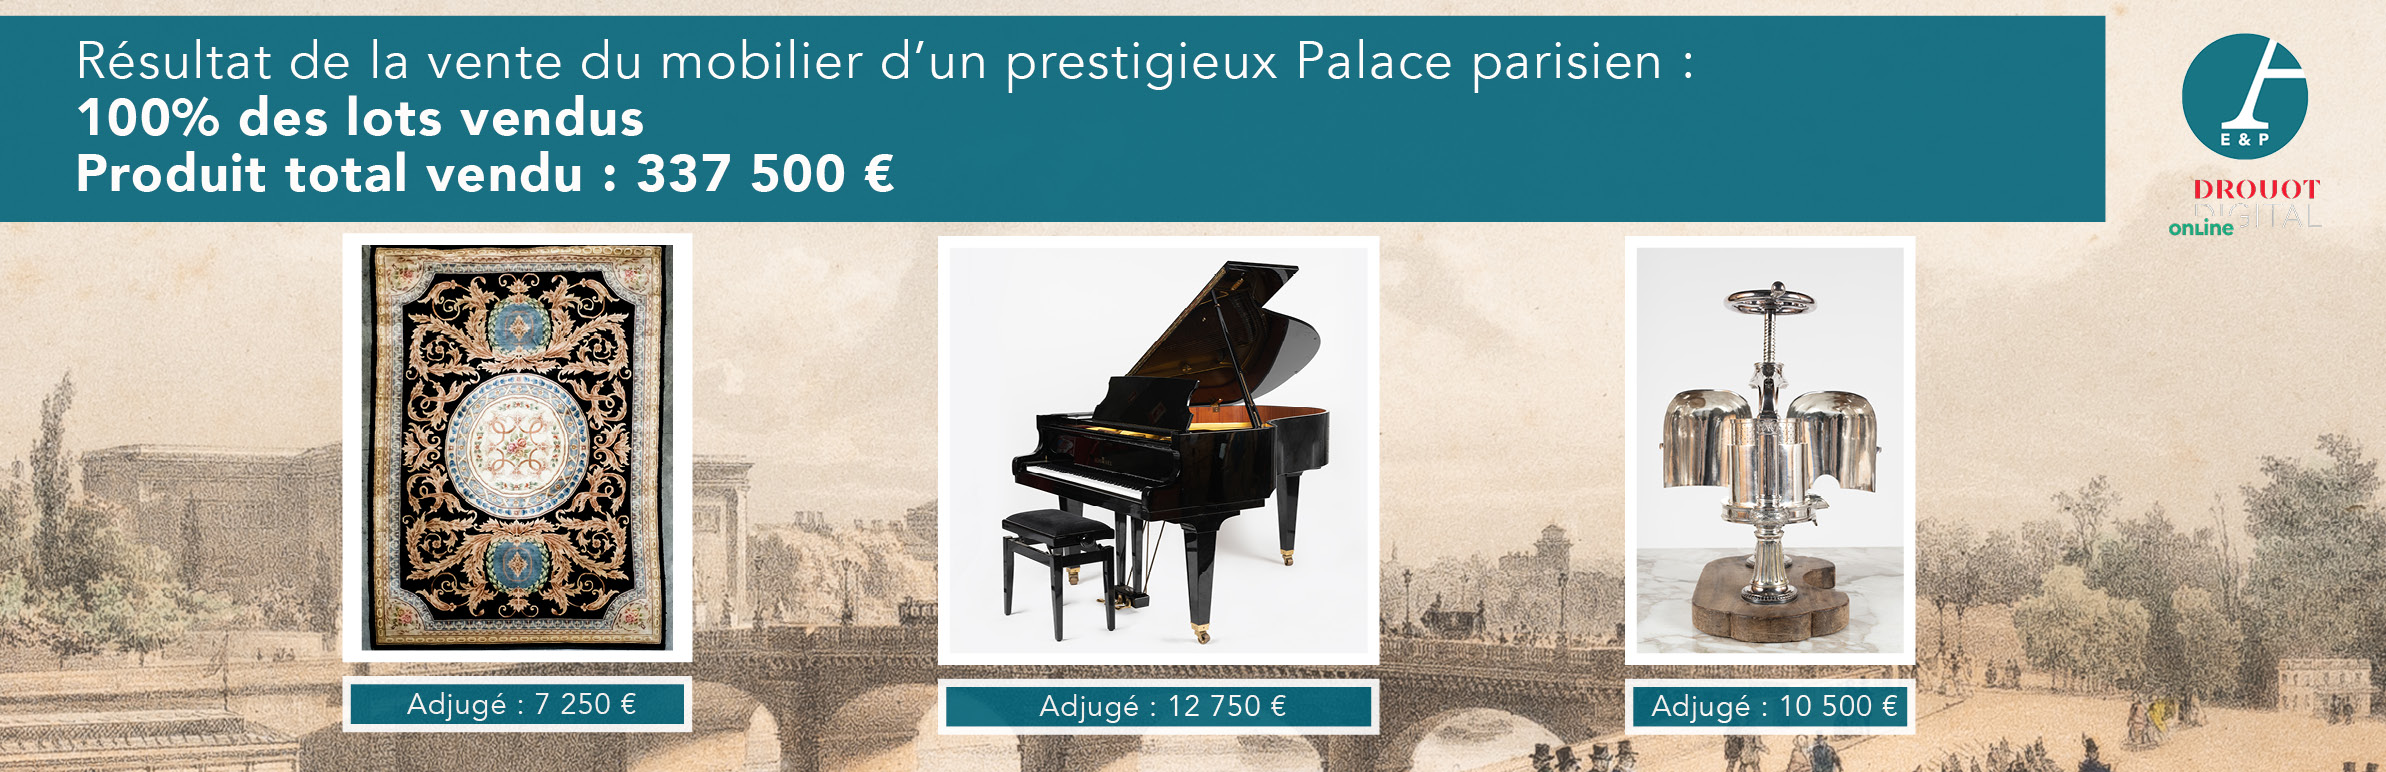 Vente aux enchères du mobilier d'un prestigieux Palace parisien